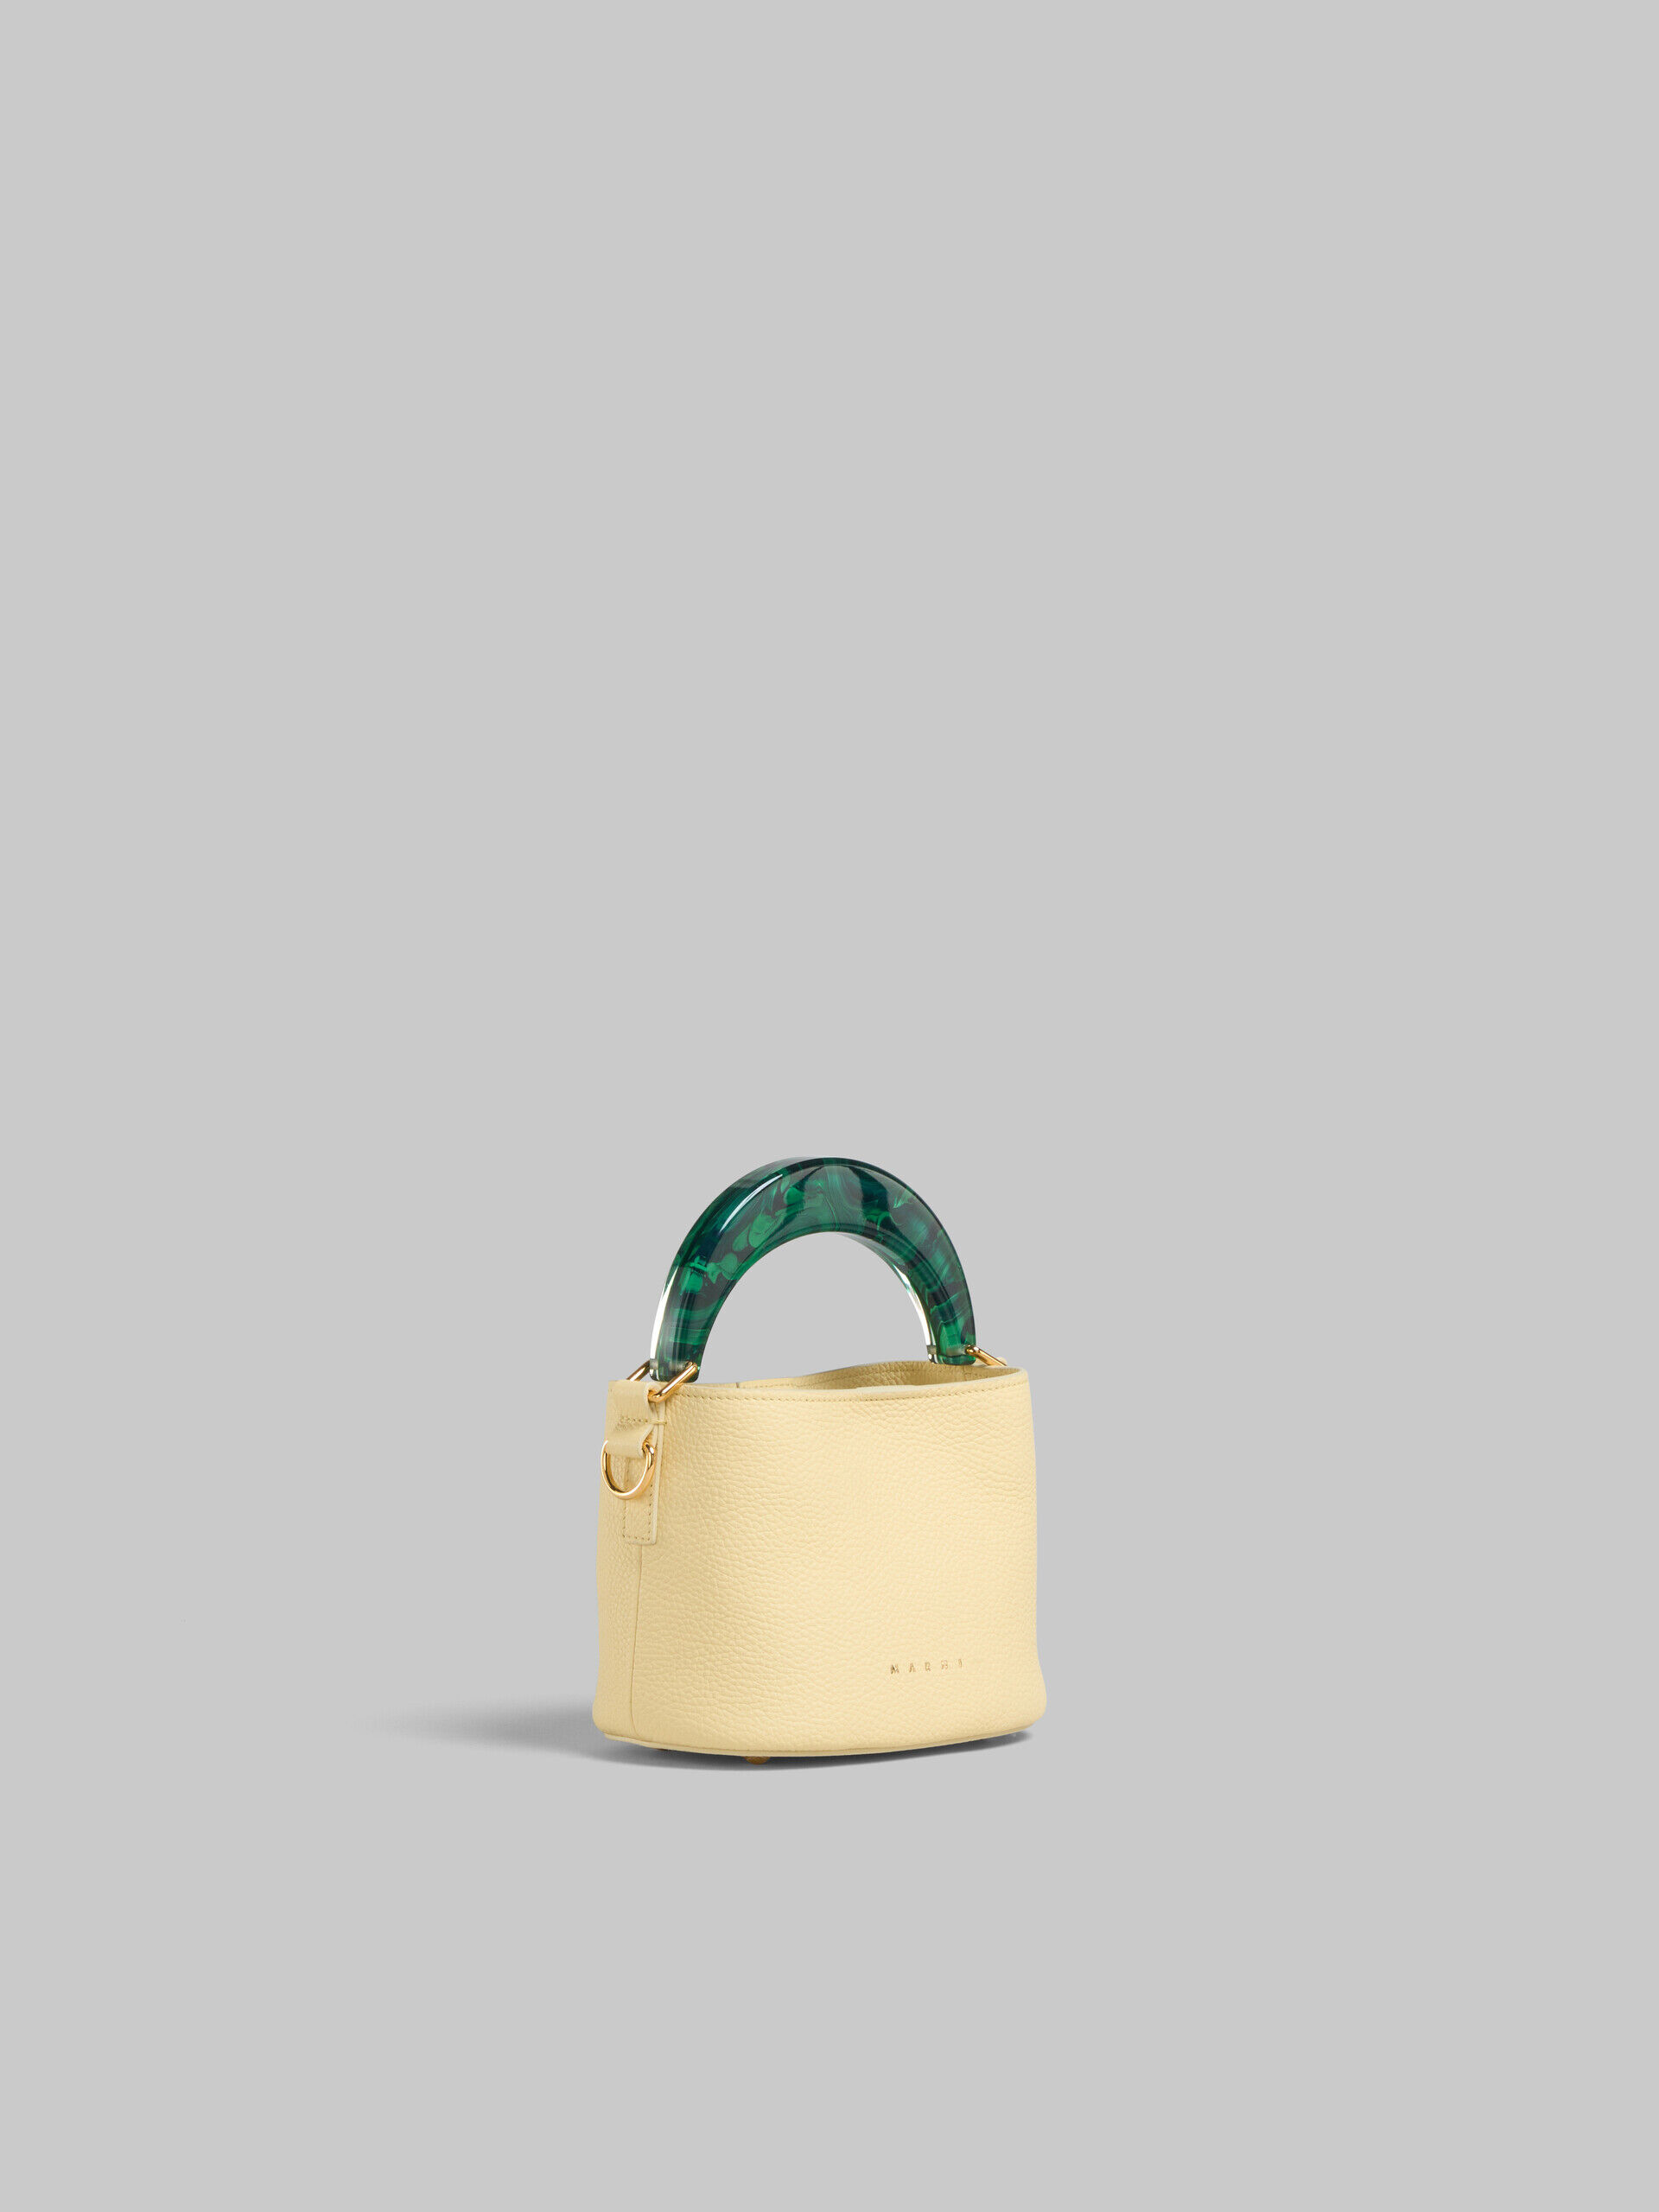 Venice Mini Bucket Bag in light yellow leather | Marni